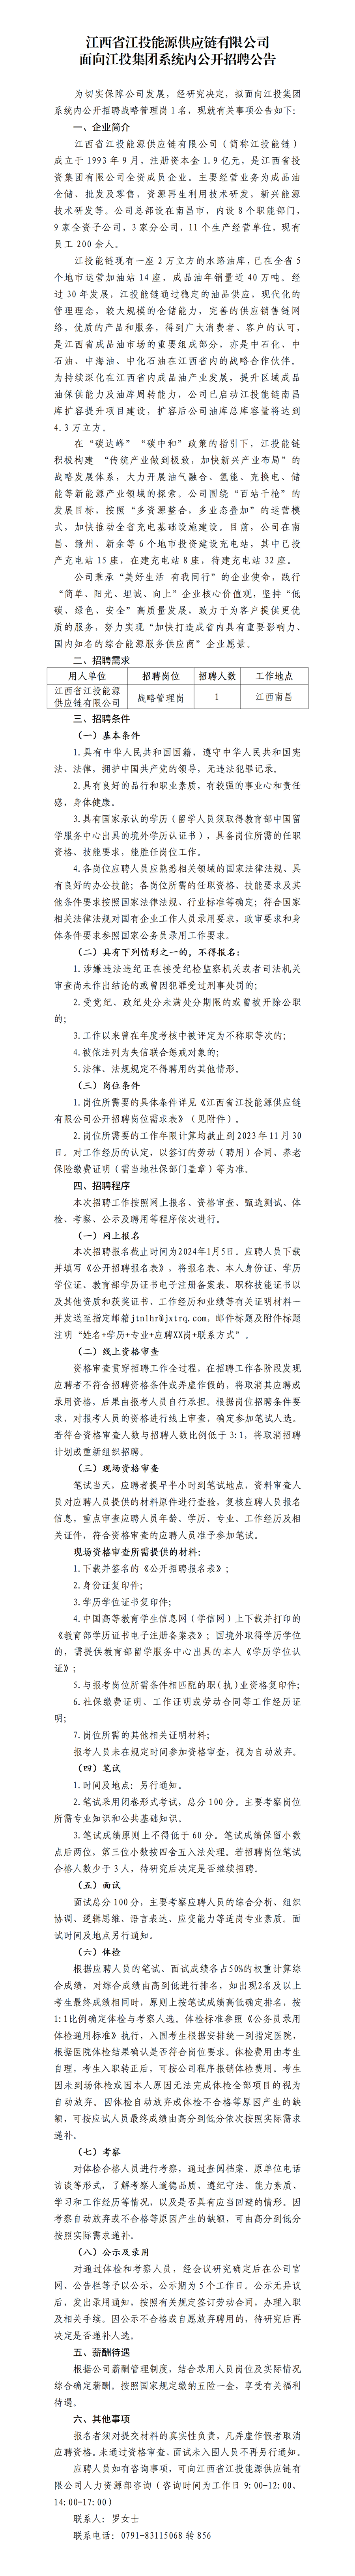 江西省江投能源供应链有限公司面向江投集团系统内公开招聘公告(1)_01.png